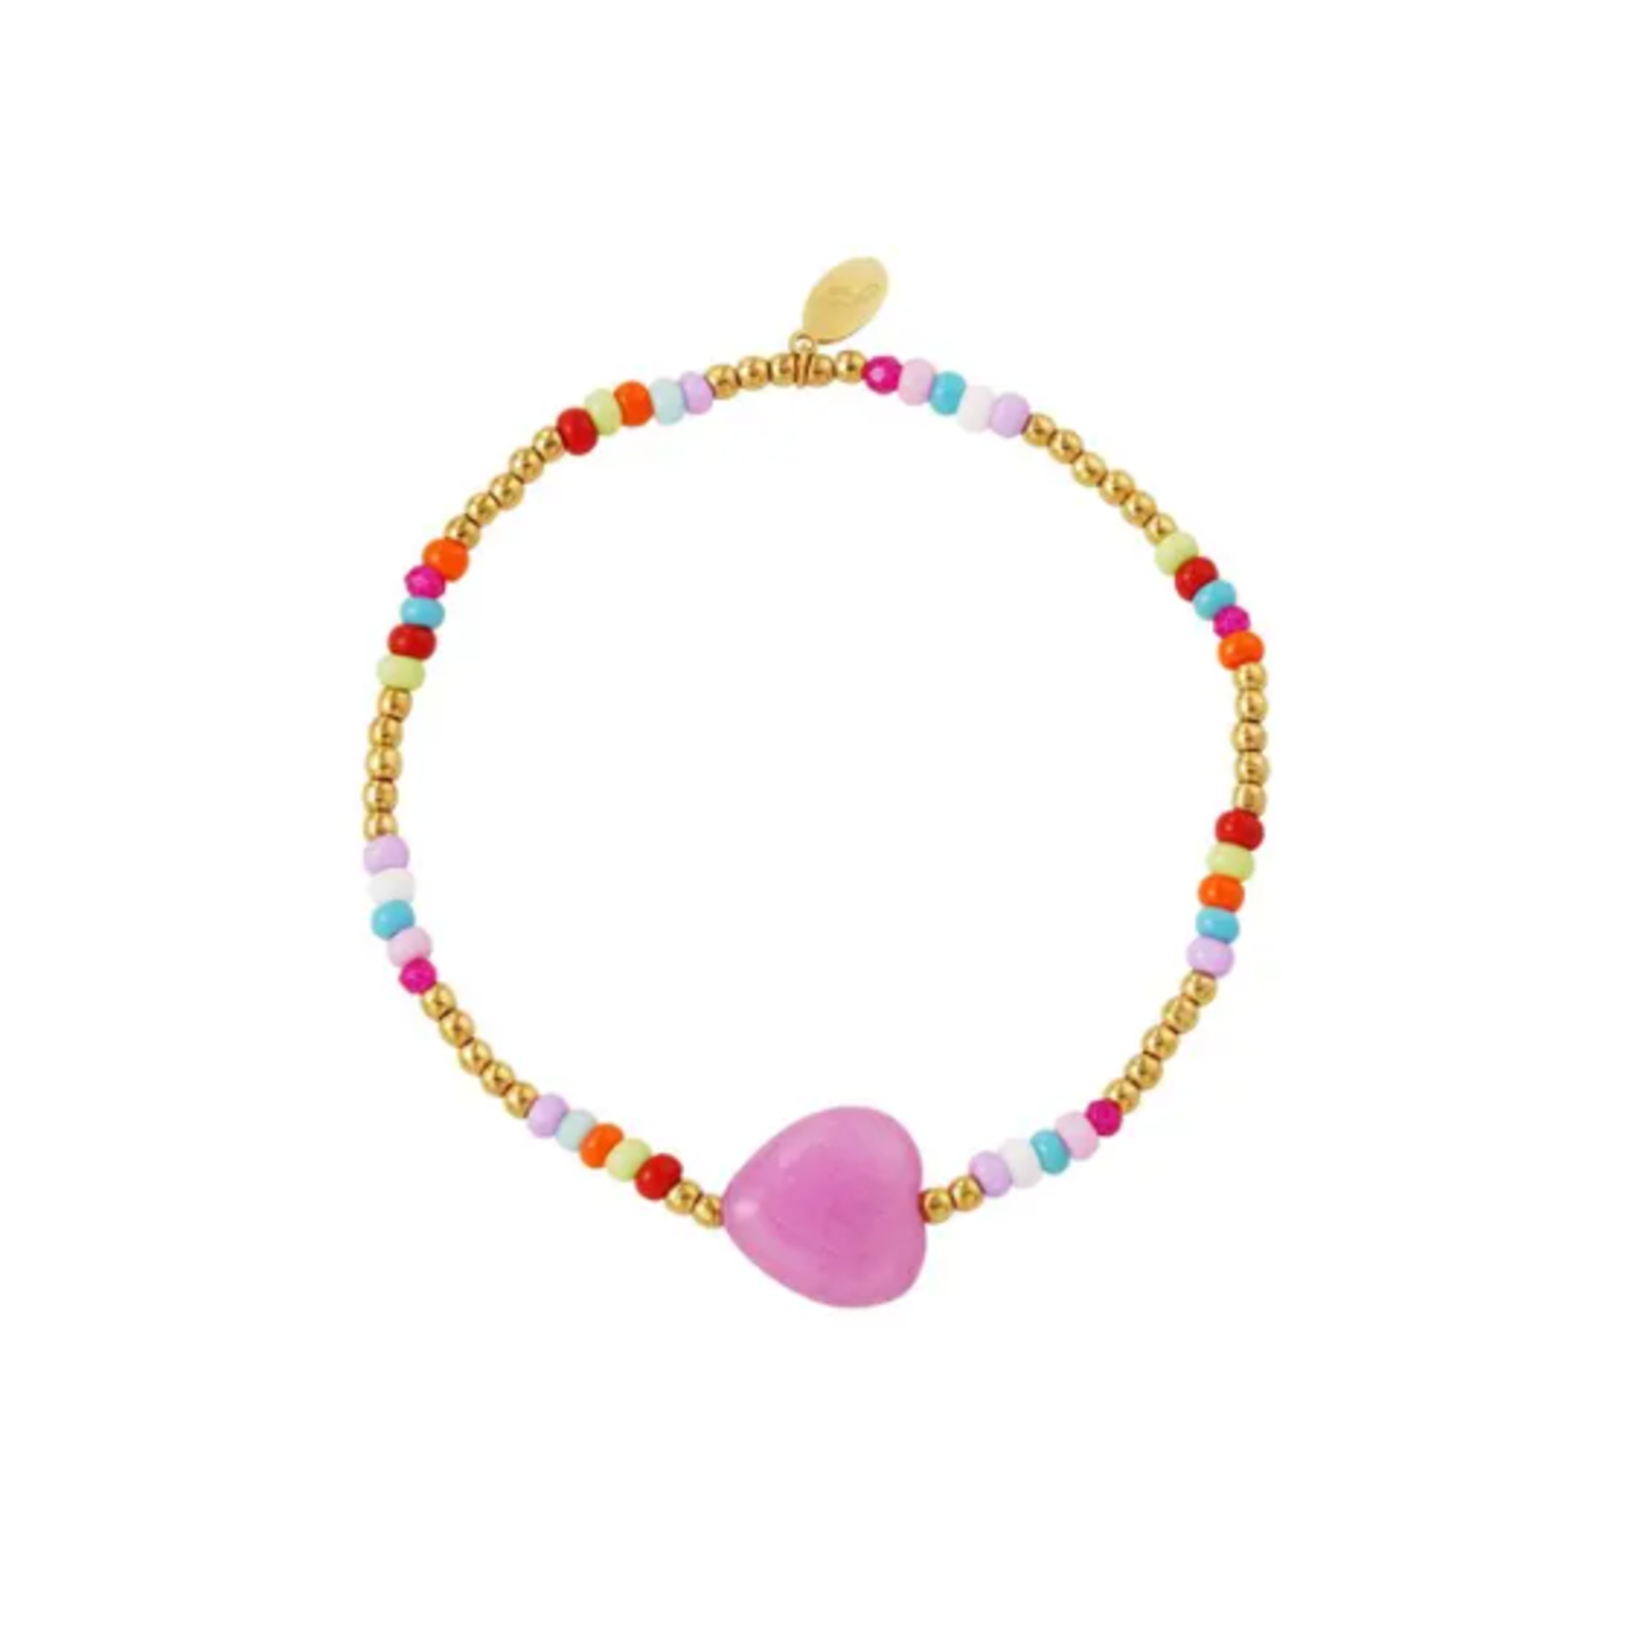 Purpers Choice Armbandje met kleurrijke kralen en hematiet kralen met lila hartje in het midden